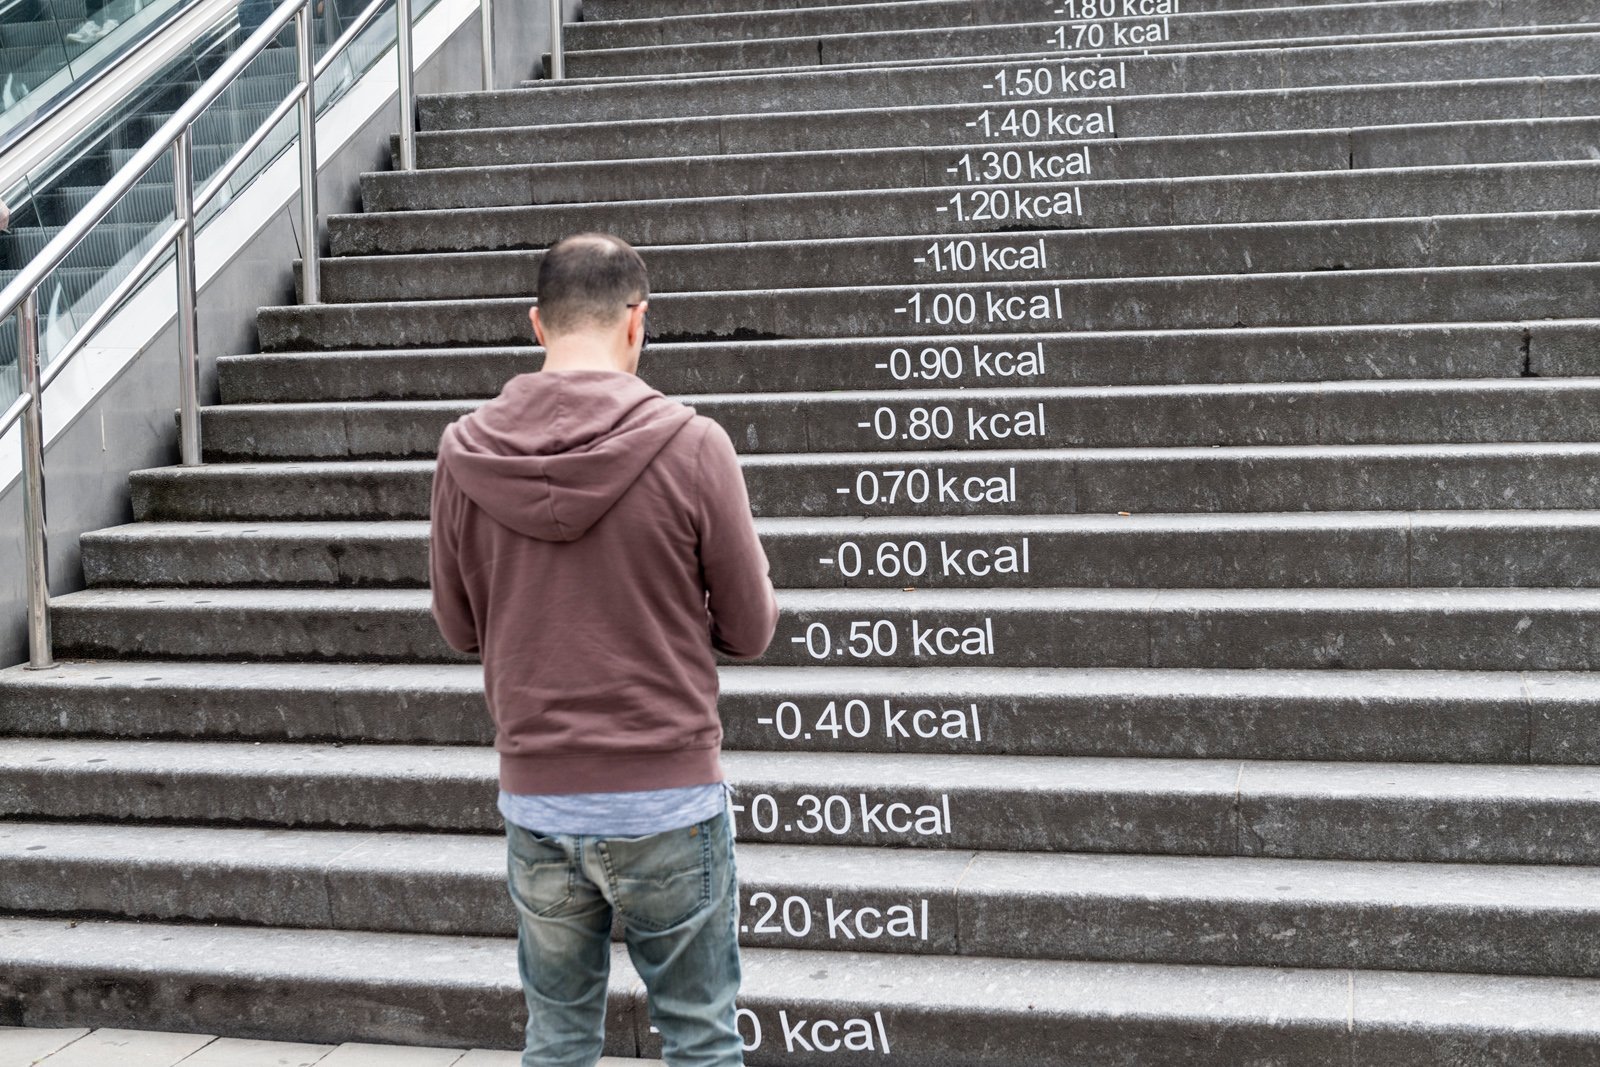 Đi thang bộ cũng là một cách rèn luyện sức khỏe bạn có thể áp dụng ngay 